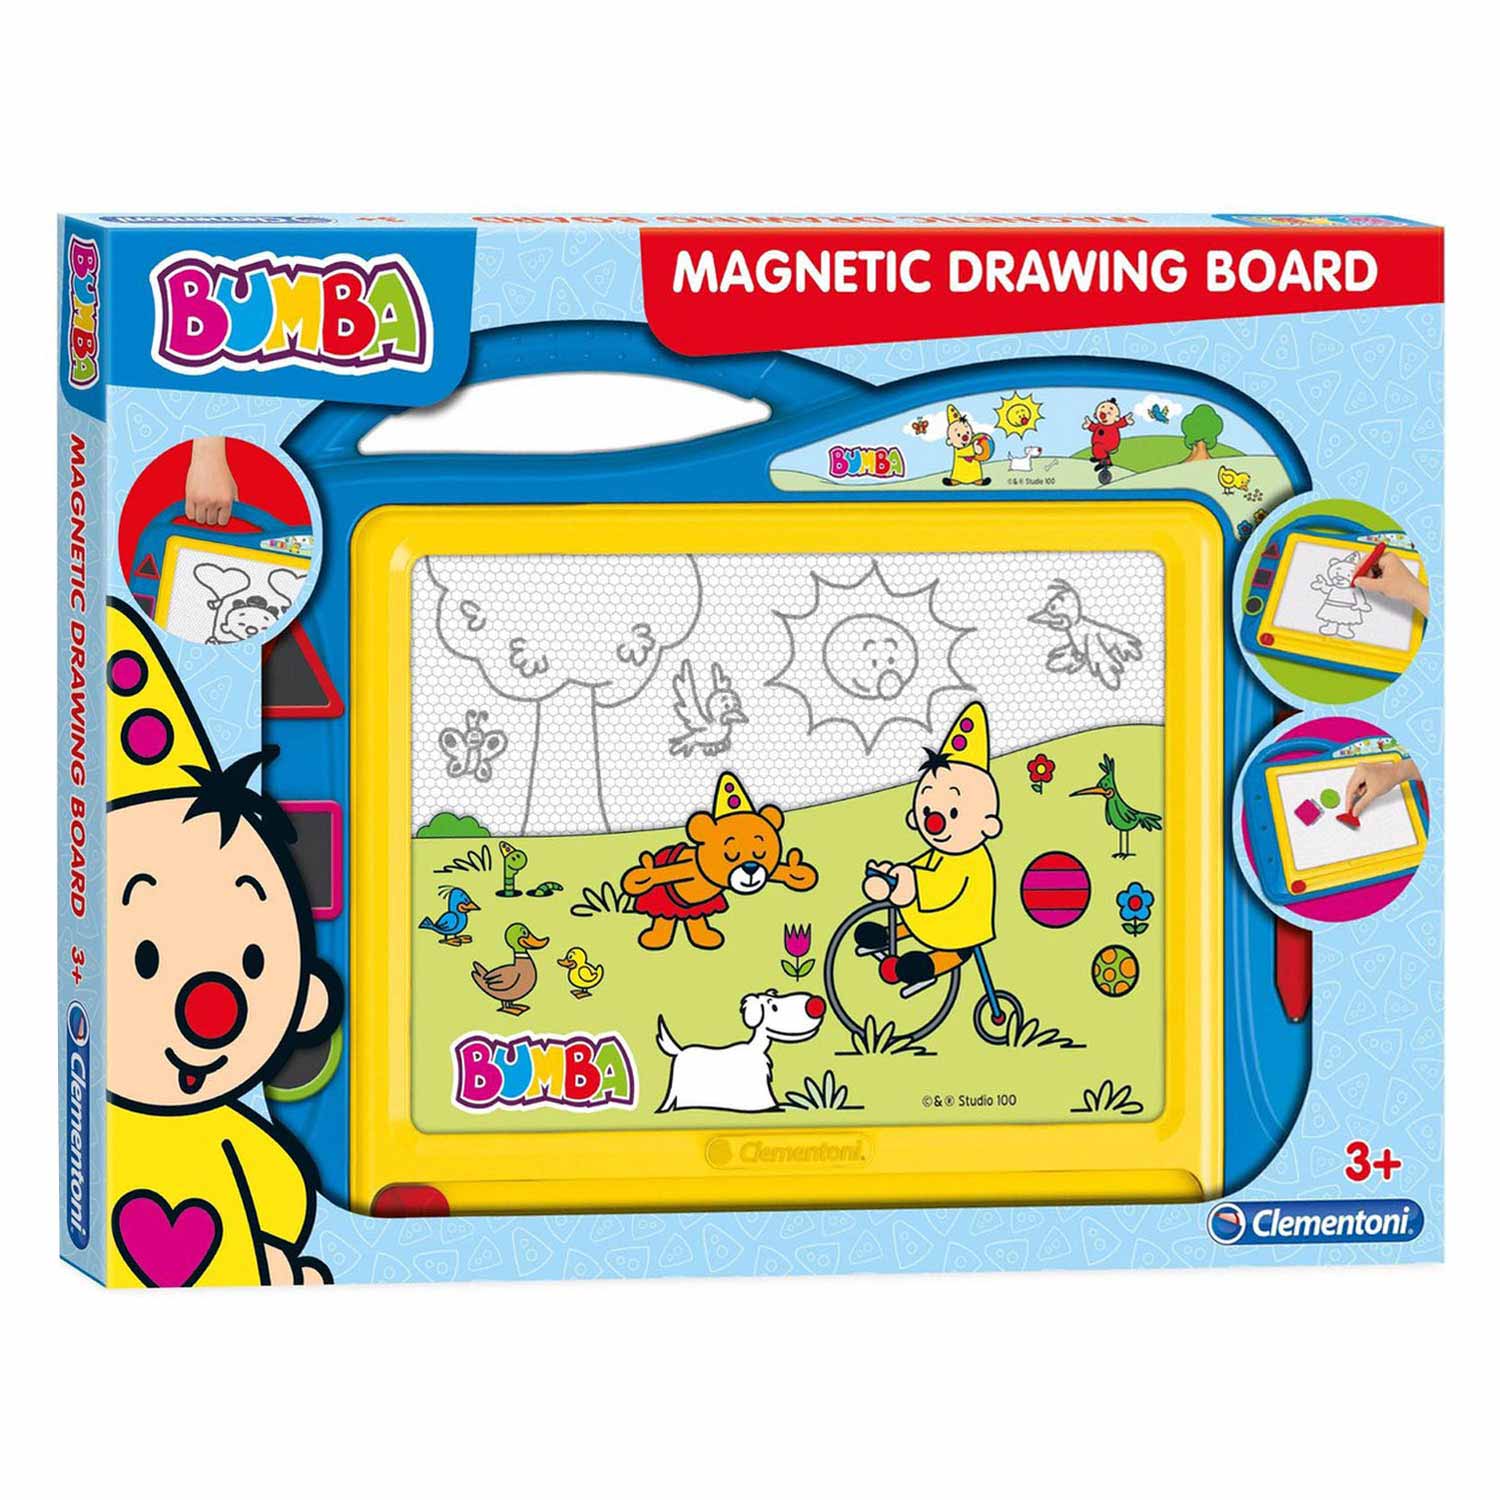 Magic Board Pad, Magnetic Board, Drawing Board